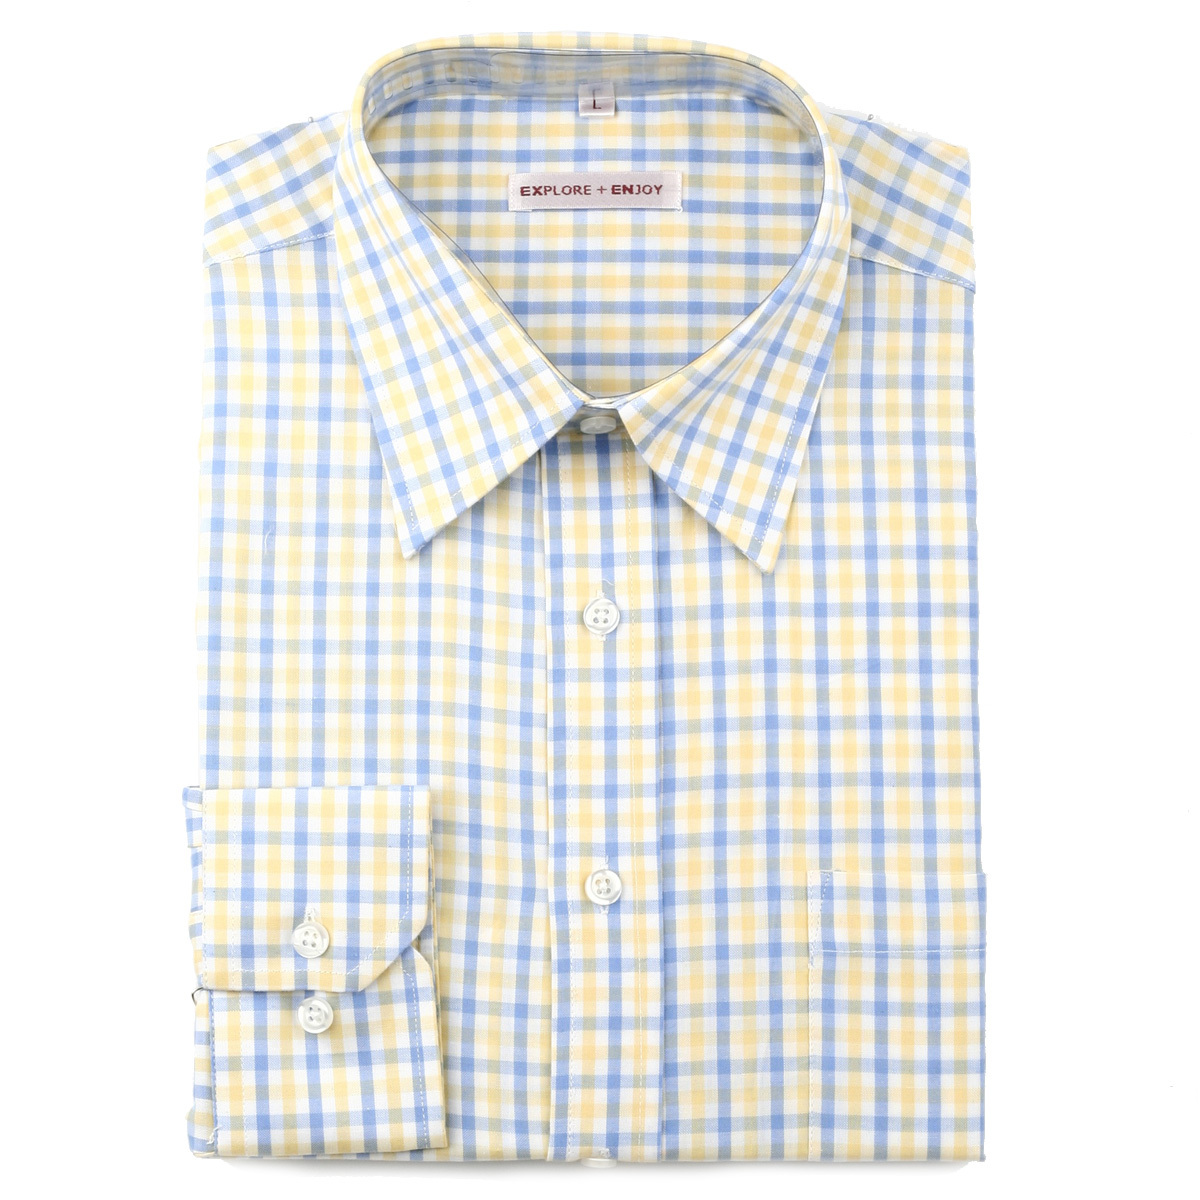 外贸商务休闲衬衫 40支全棉男士长袖衬衫 宽松型 S13黄蓝中格